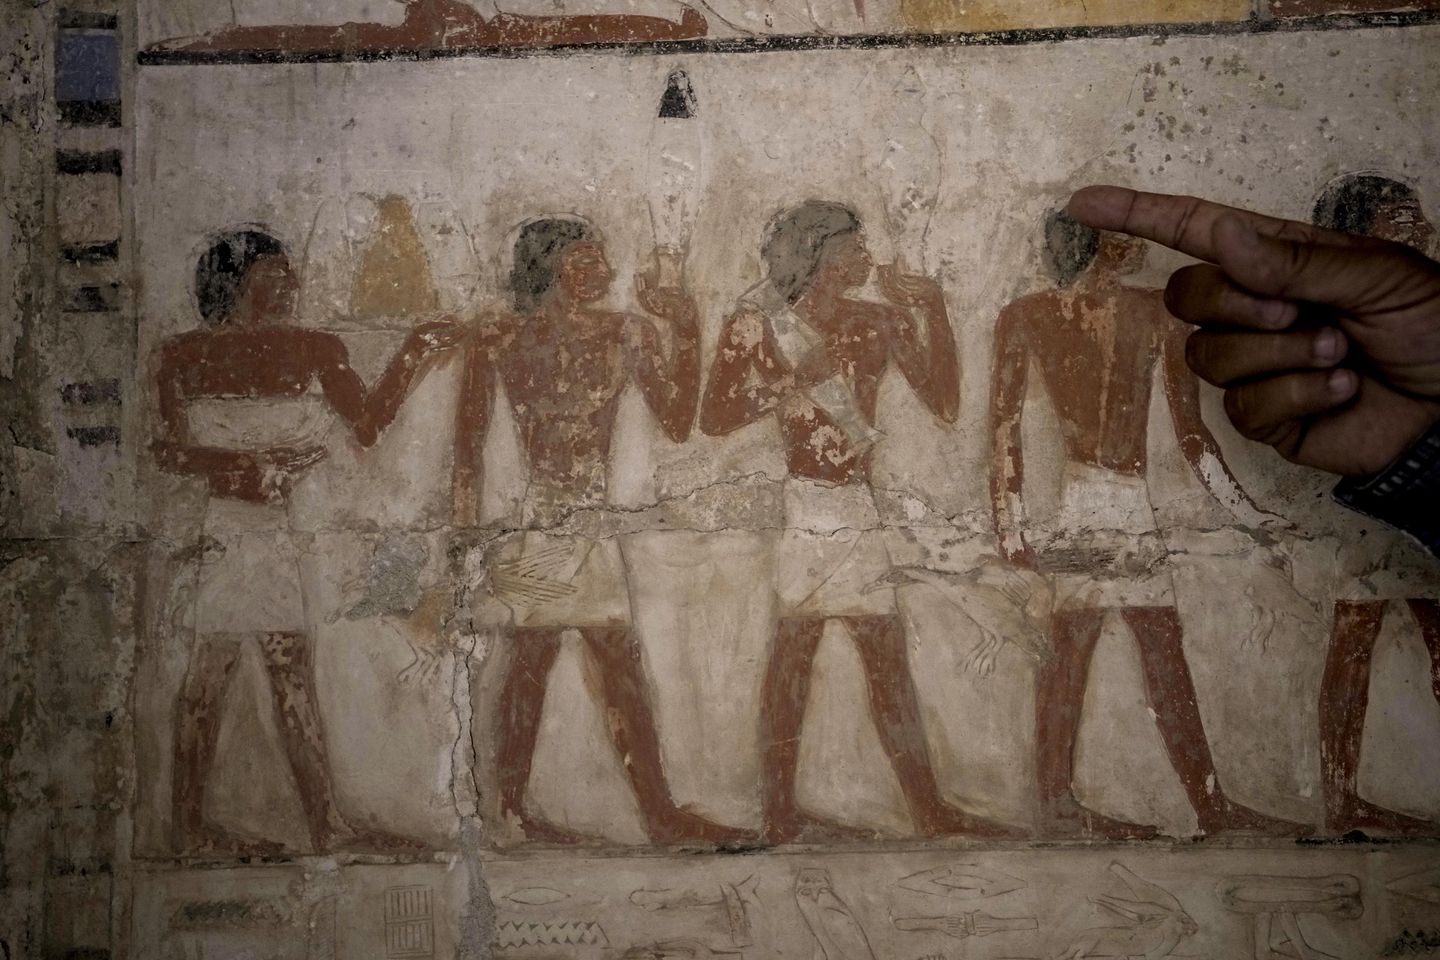 Mısır, Saqqara nekropolünde yakın zamanda keşfedilen antik atölyeleri ve mezarları ortaya çıkardı